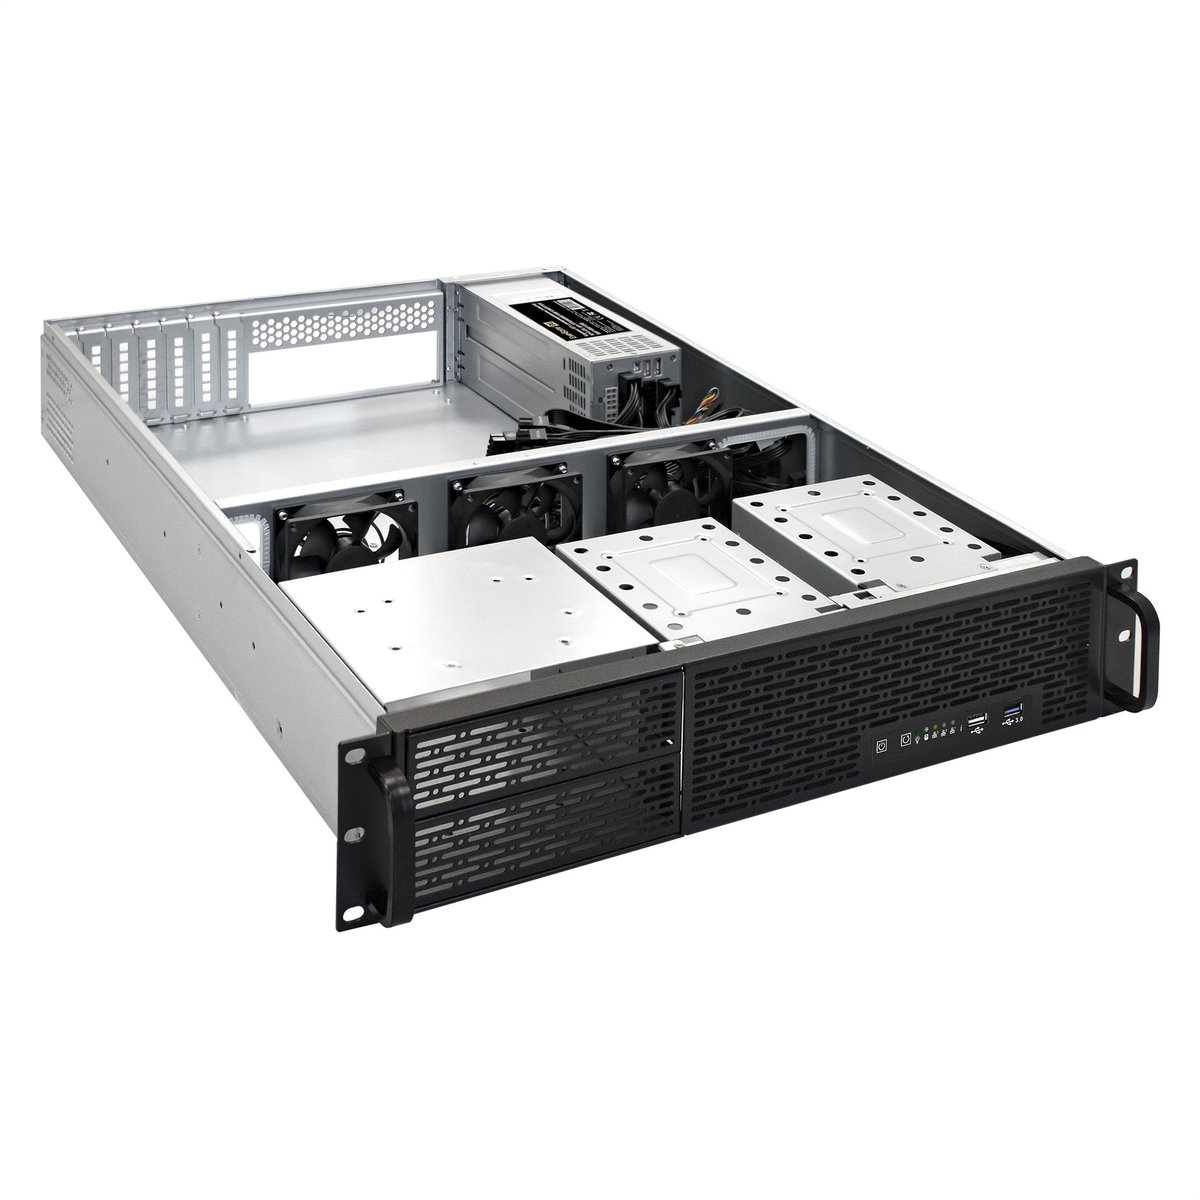 Серверная платформа ExeGate Pro 2U650-06/2U2098L/Redundant 2x550W